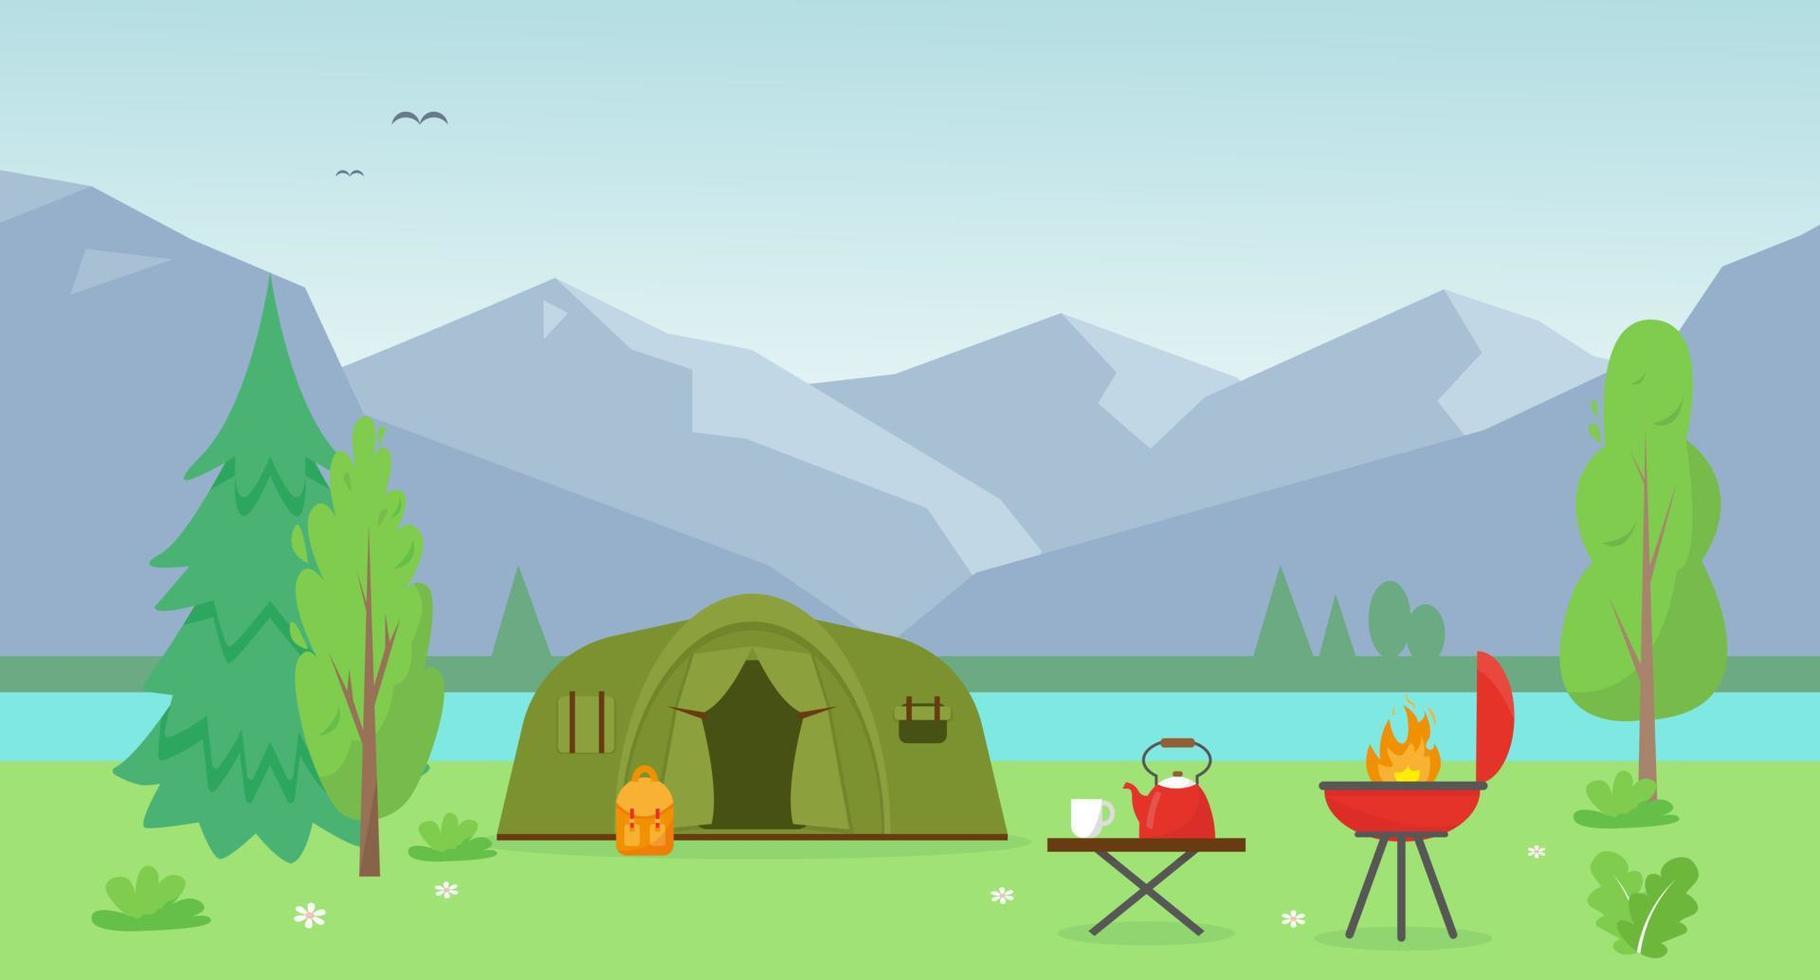 Camping Zelt in der Nähe von das See und Berge. Sommer- oder Frühling Landschaft. Zeit zu Reise Konzept. Vektor Hintergrund Illustration.